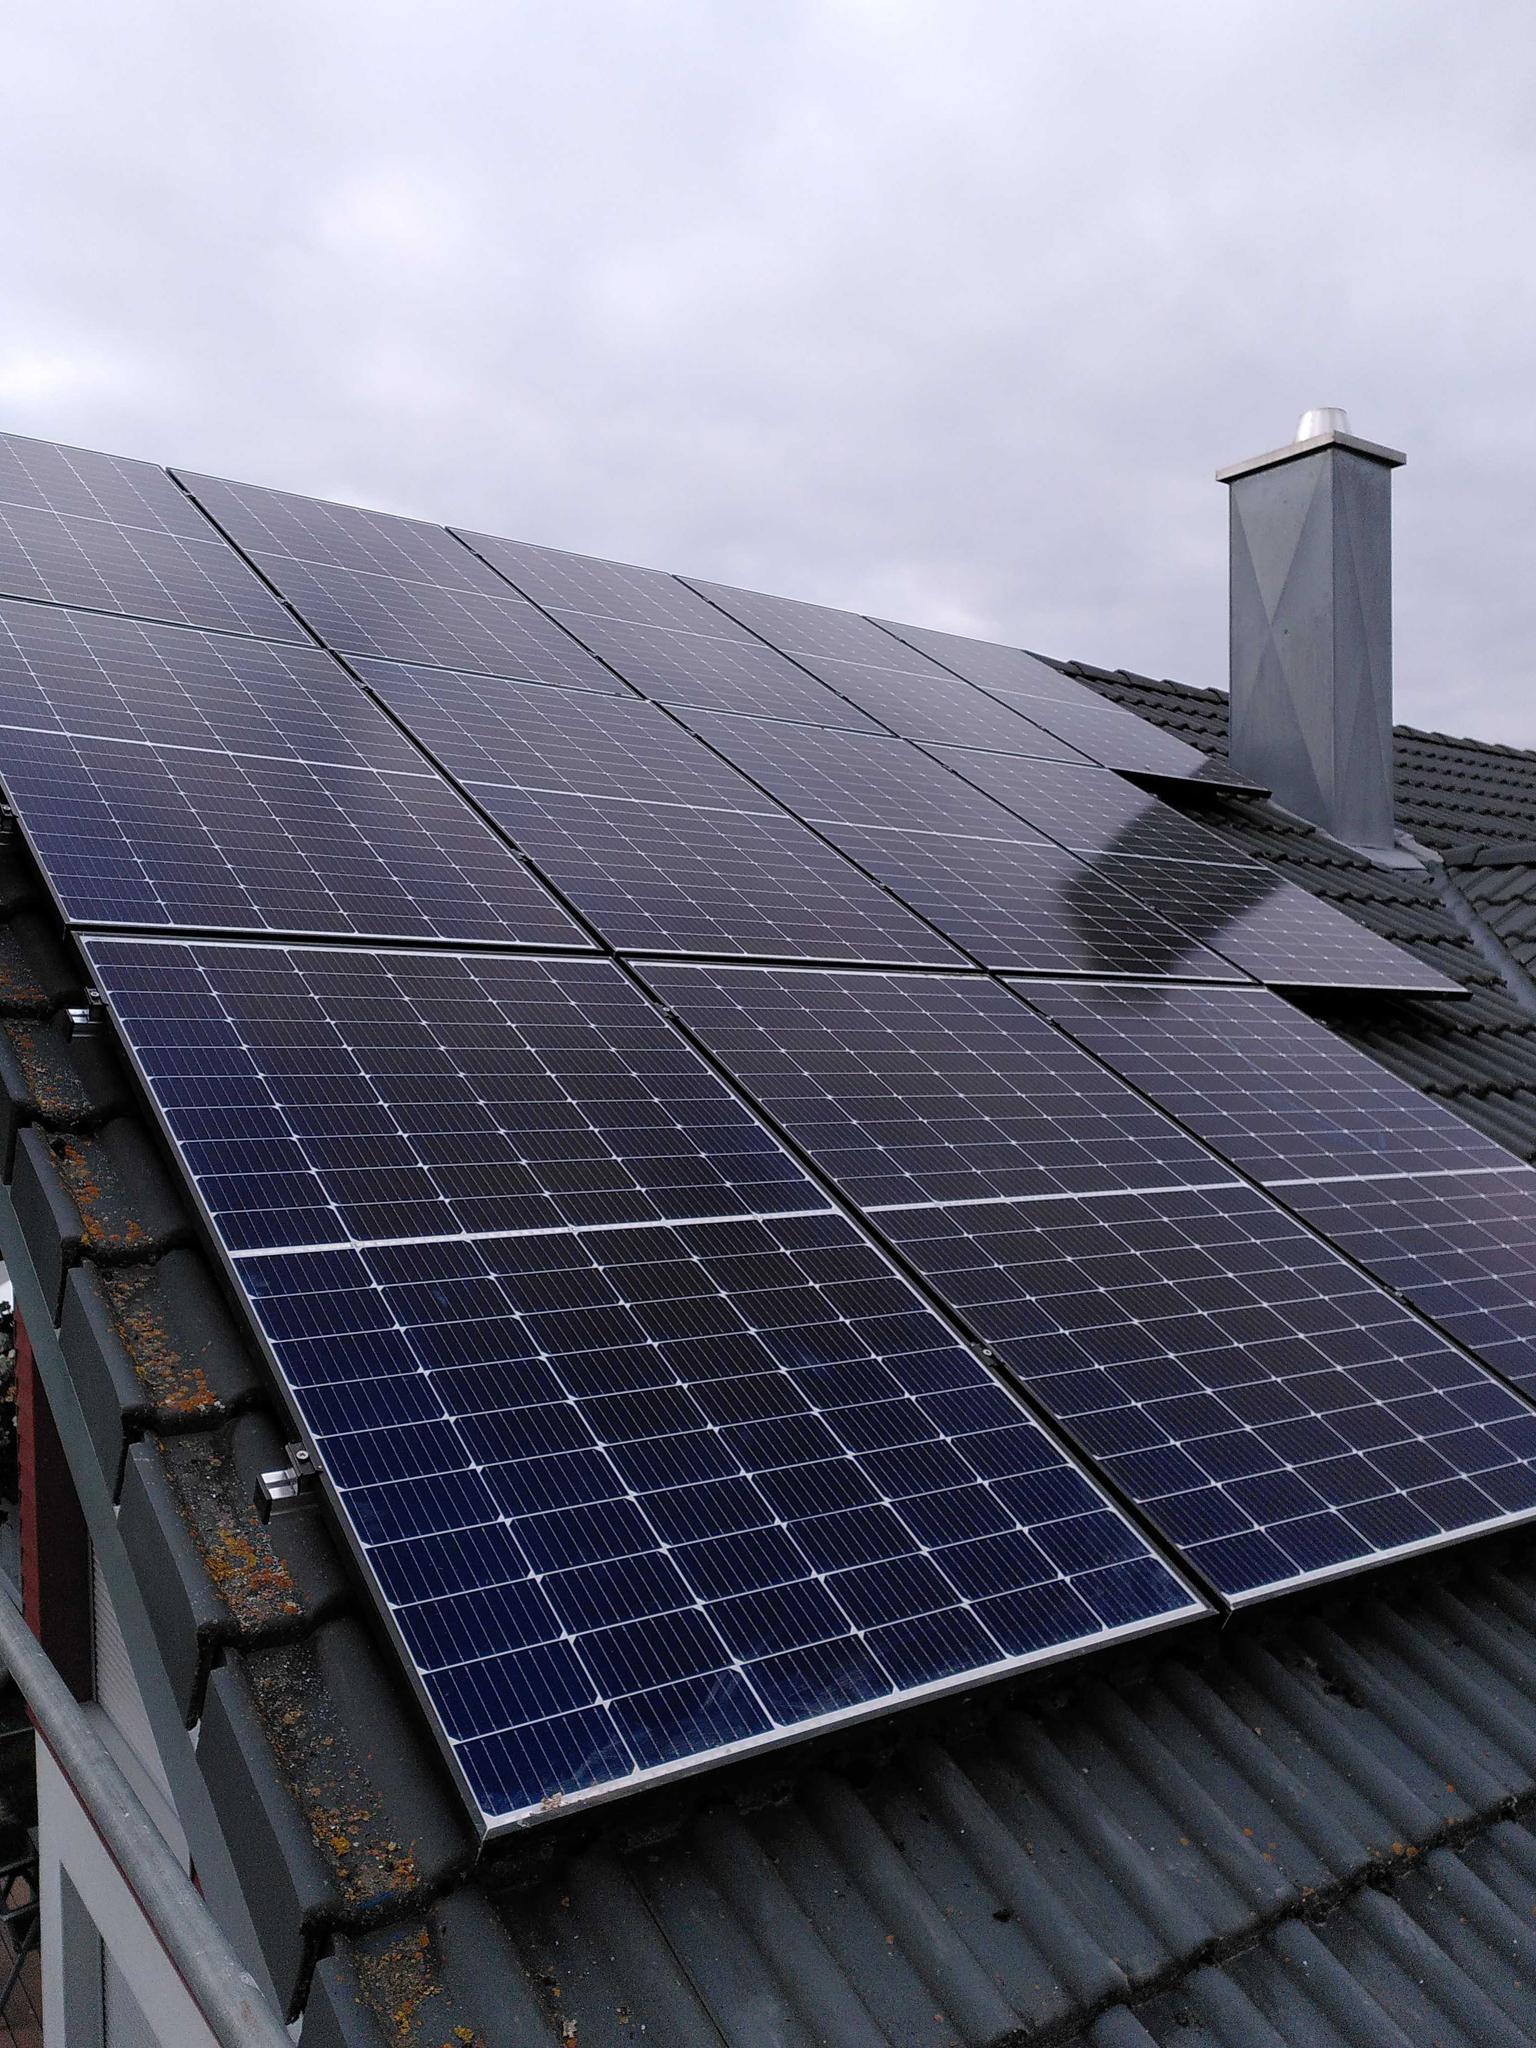 Solarmodule auf einem Dach - LG PV-Speicher-Erfahrungen bei zolar